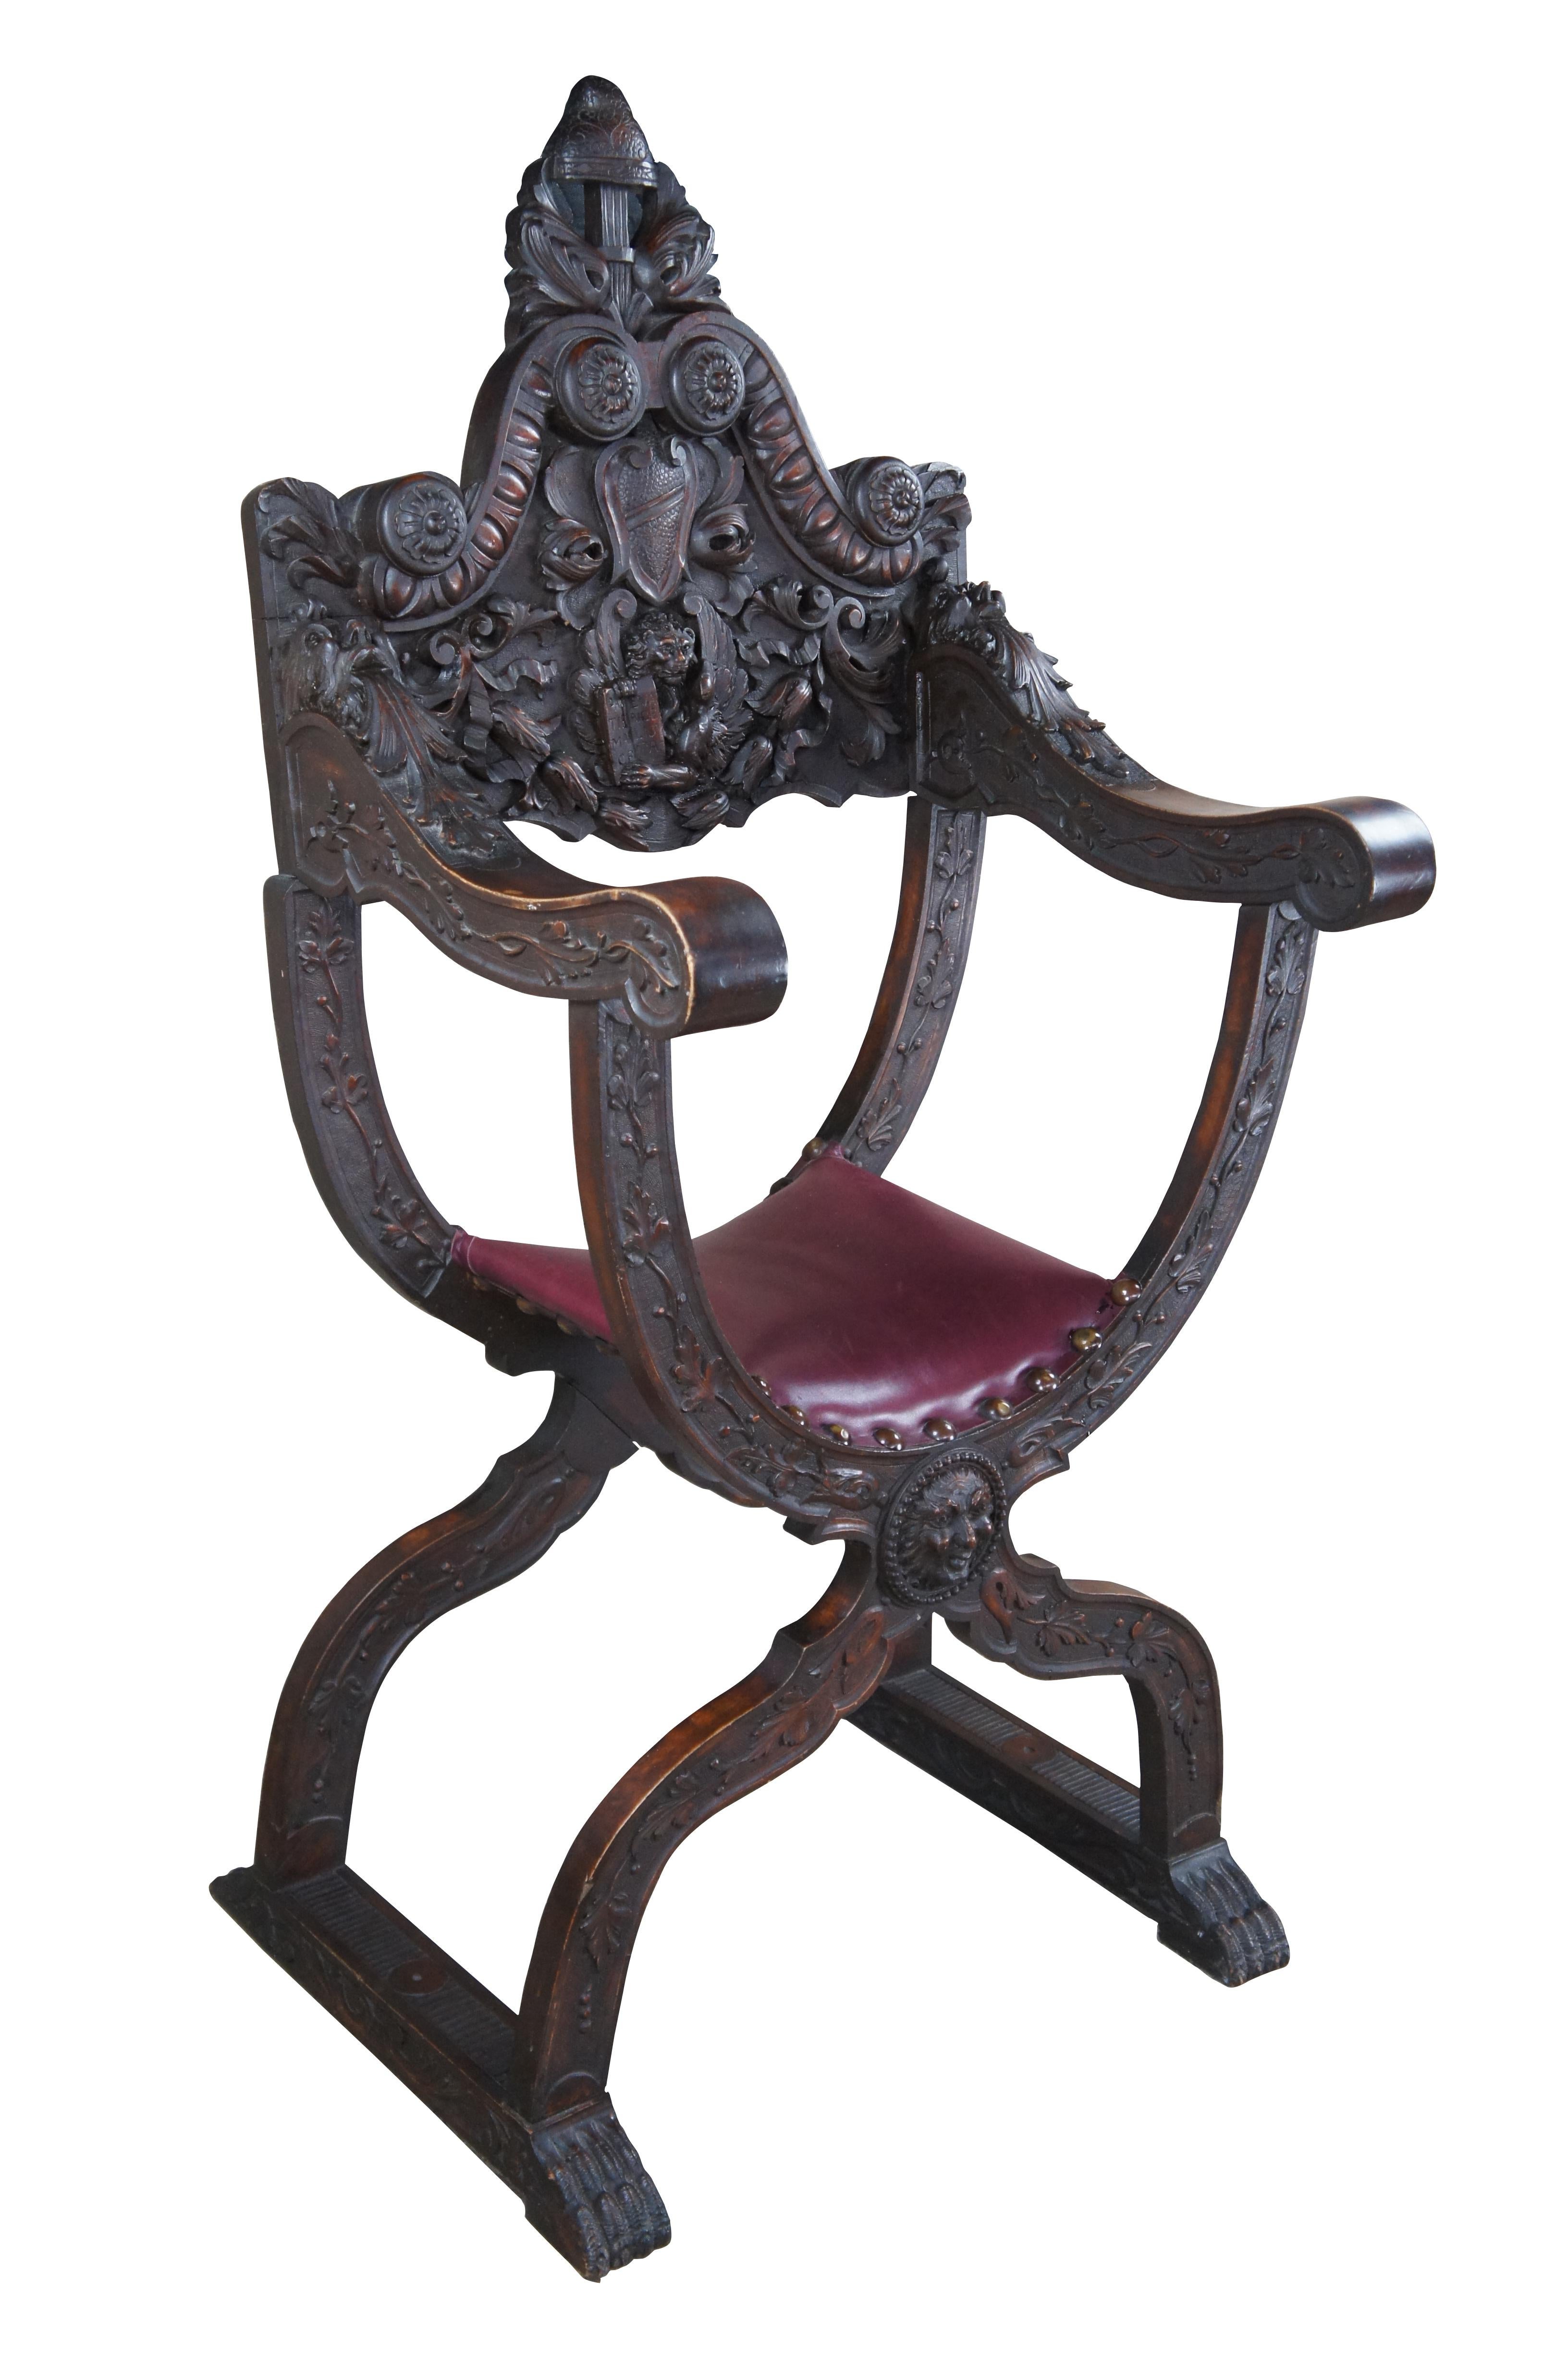 Exceptionnelle chaise à accoudoir Savonarola Curule de style Renaissance italienne du milieu du XIXe siècle. Il est doté d'un cadre en noyer méticuleusement sculpté et d'une assise en cuir. Le dos est orné d'un lion ailé tenant une tablette sous un